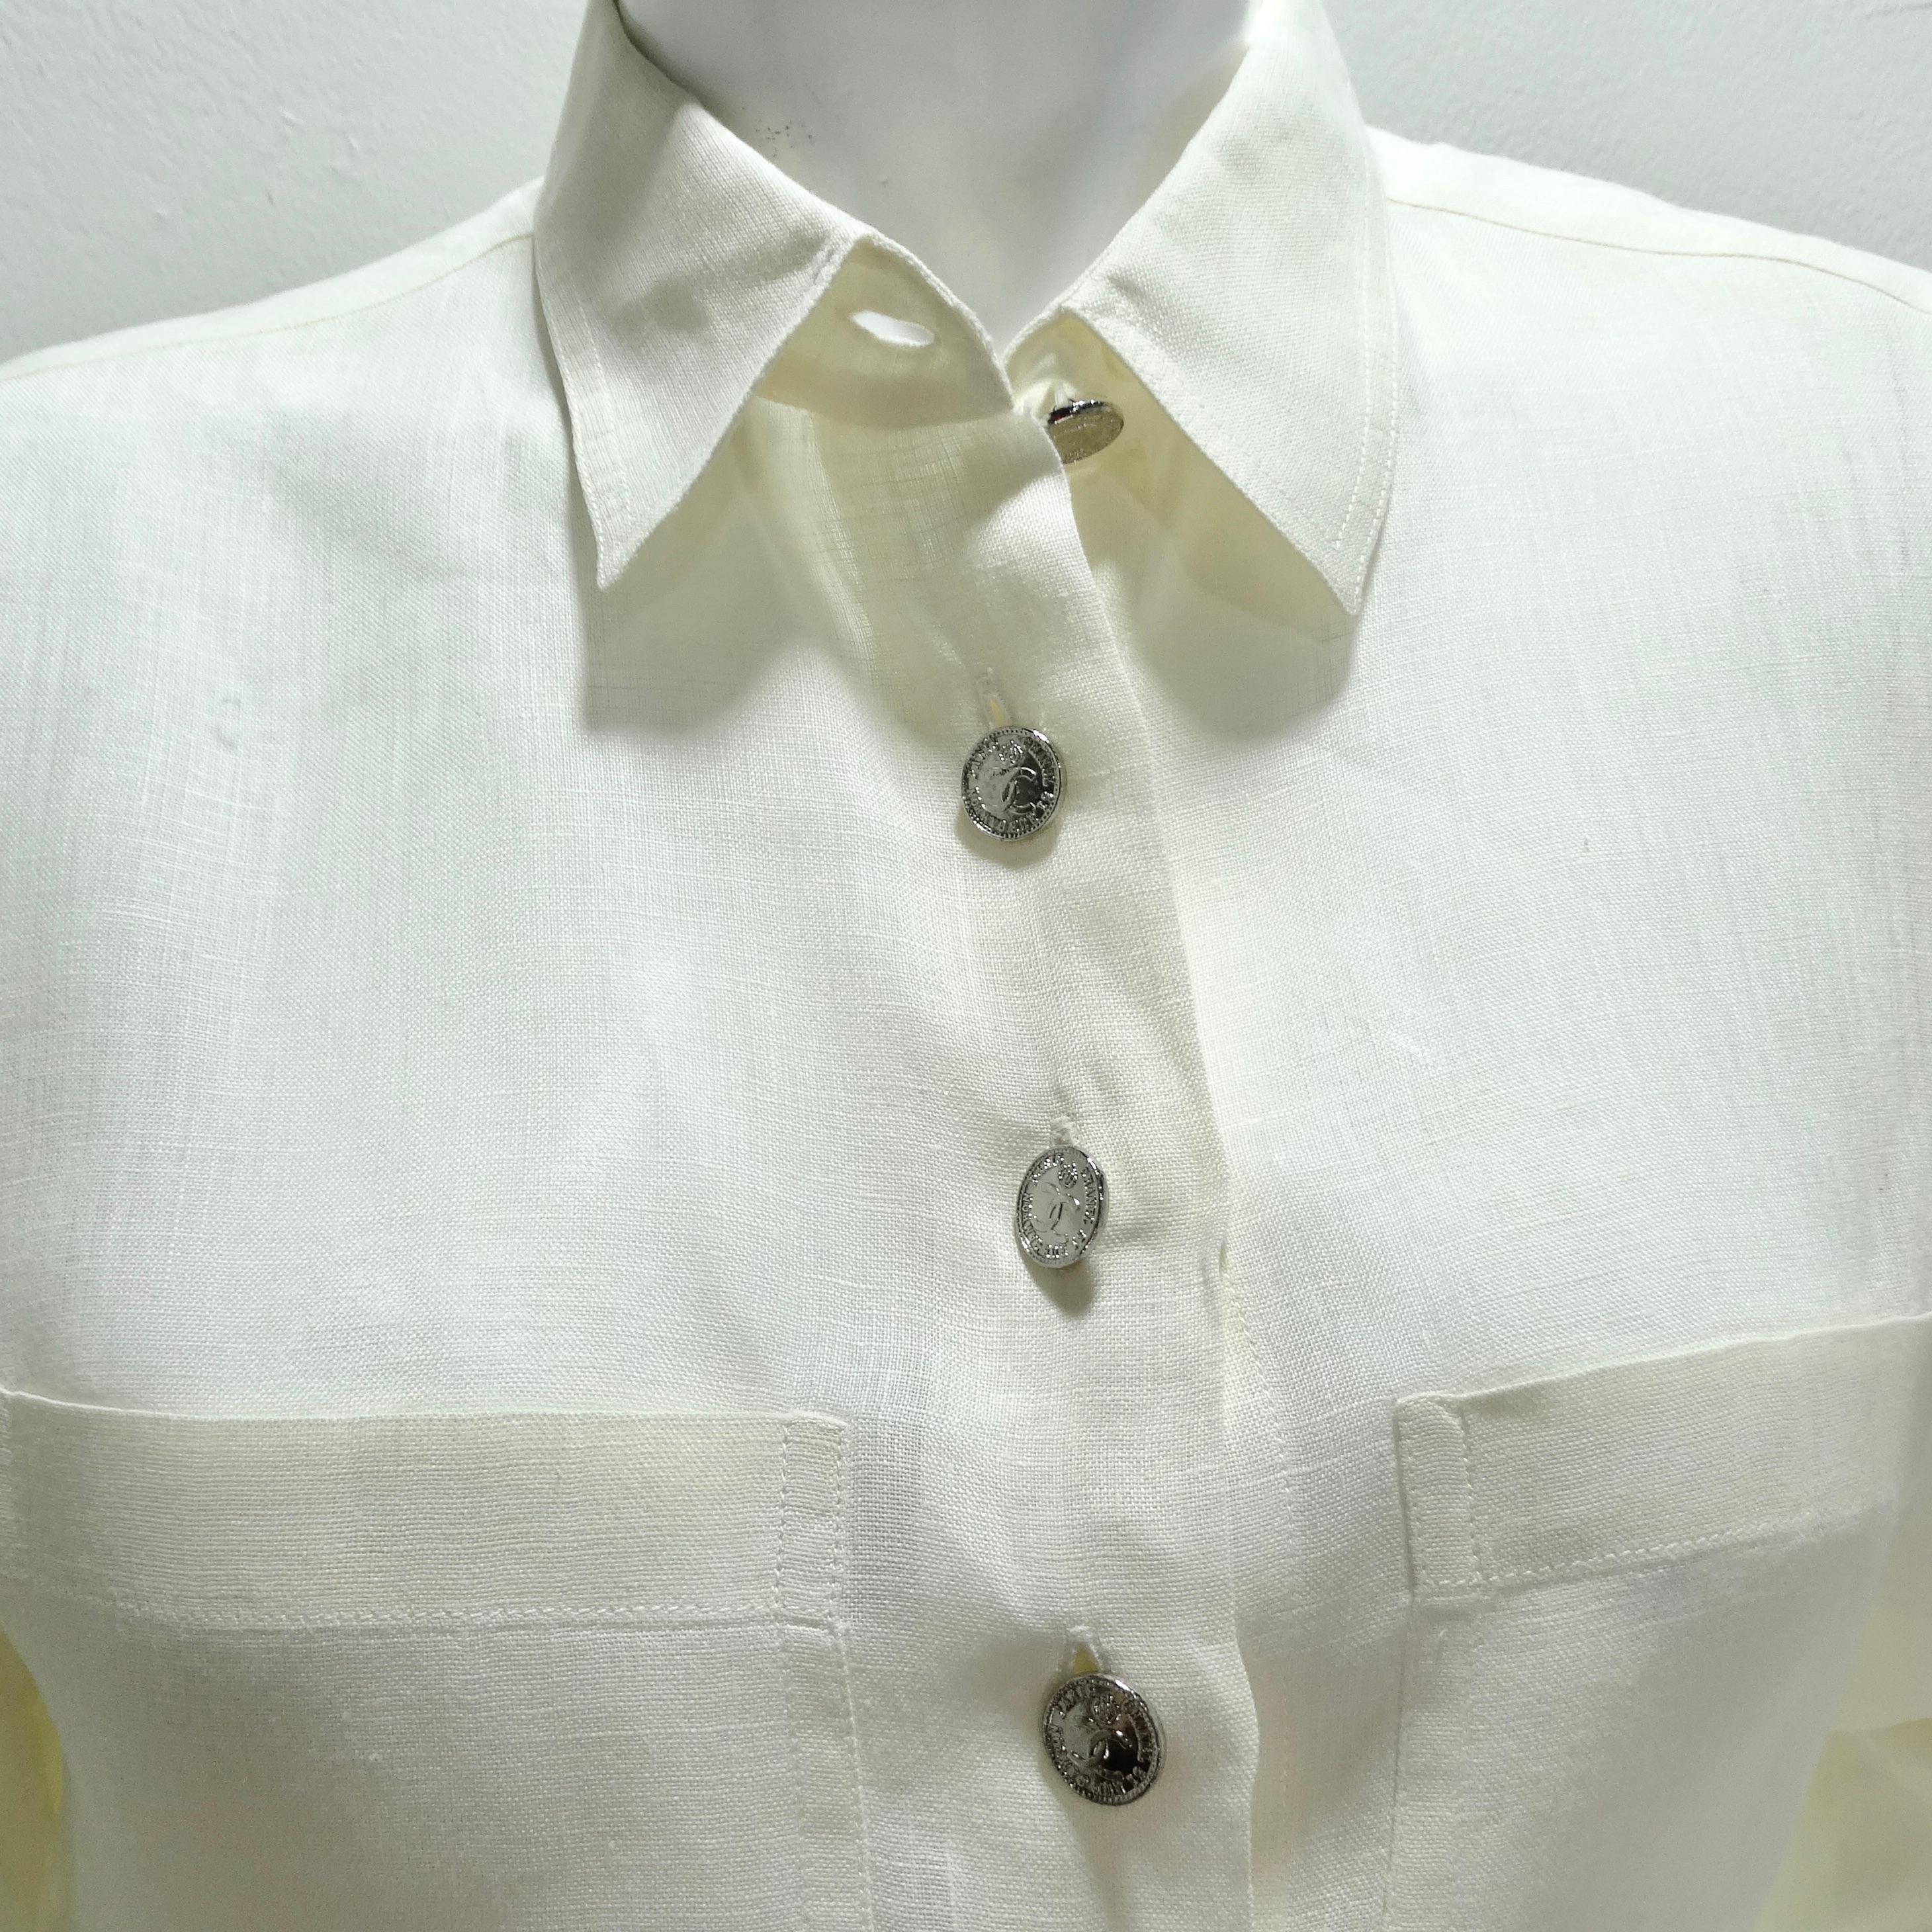 Werten Sie Ihre Garderobe mit dem Chanel 90s White Linen Button Down Shirt auf - ein klassisches und zeitloses Stück, das Raffinesse ausstrahlt. Dieses Hemd mit Kragen und Knopfleiste ist aus leichtem elfenbeinfarbenem Leinen gefertigt. Die